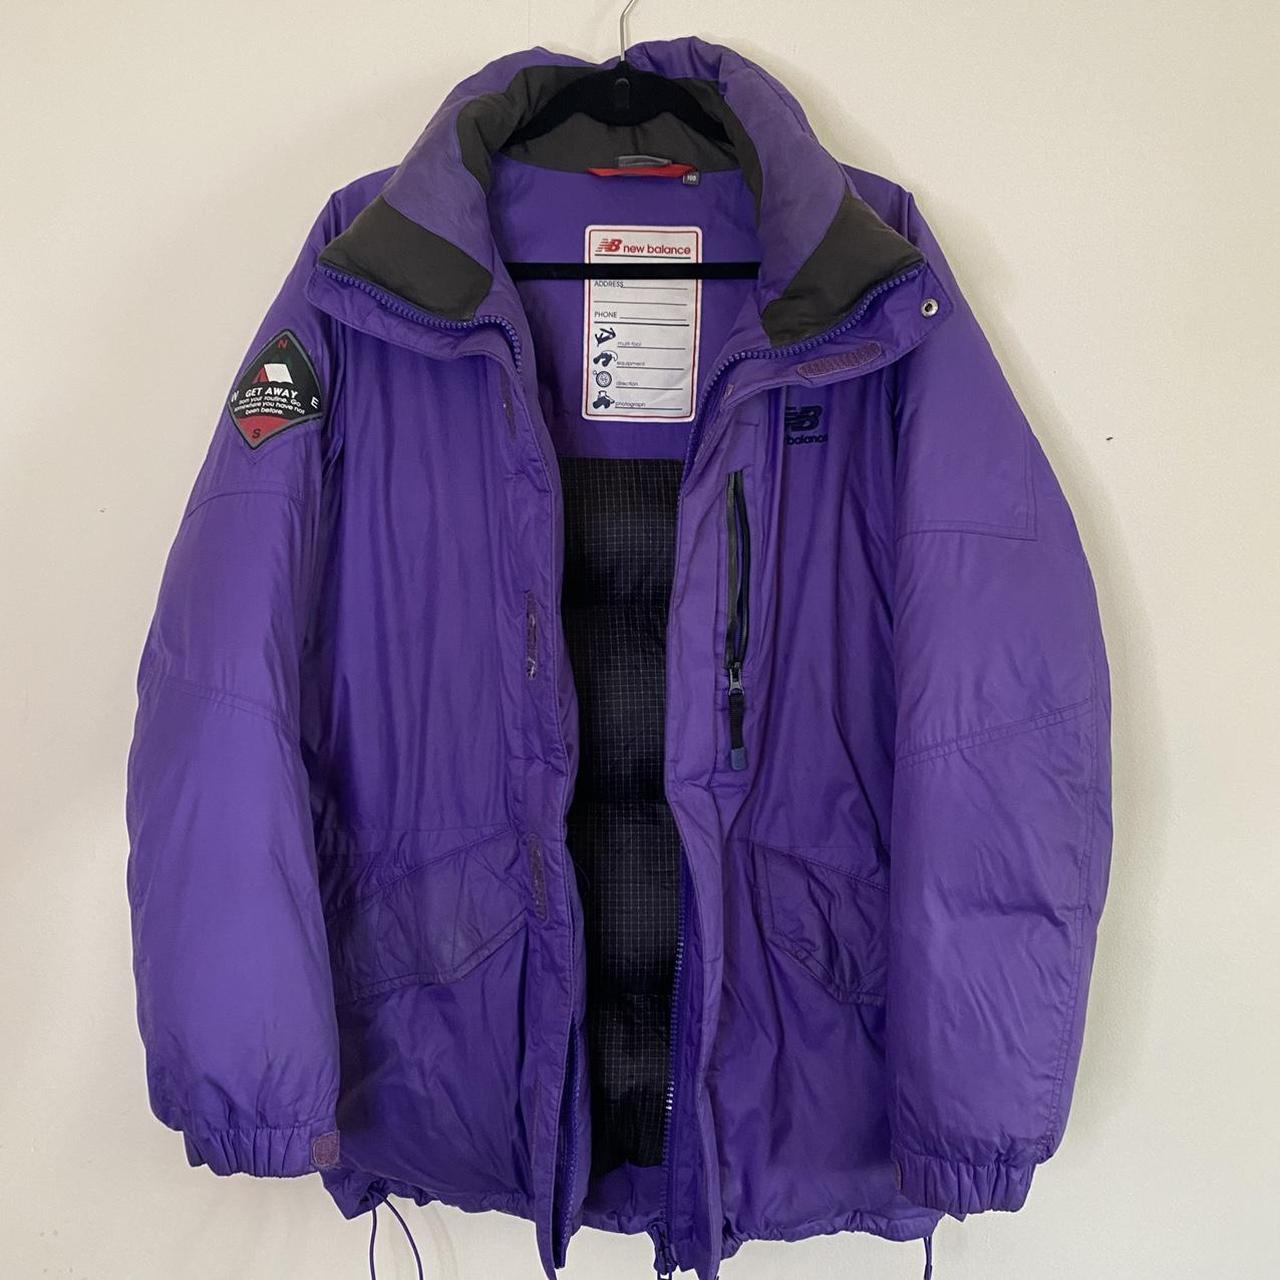 #newbalance #retro puffer jacket in purple, two... - Depop